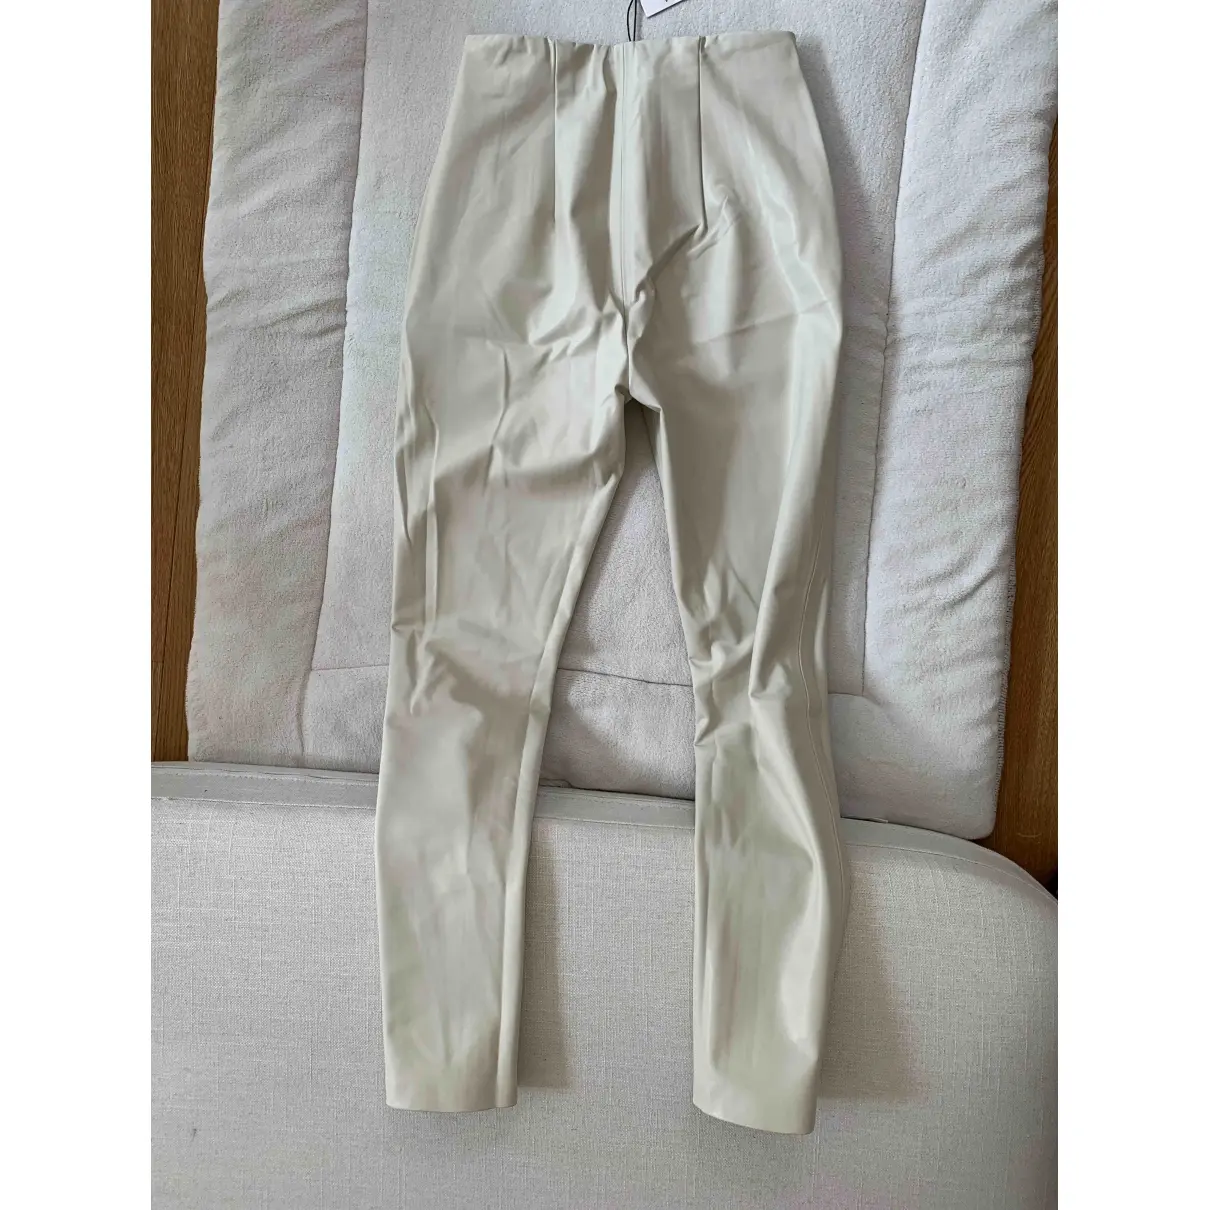 Dorothee Schumacher Slim pants for sale